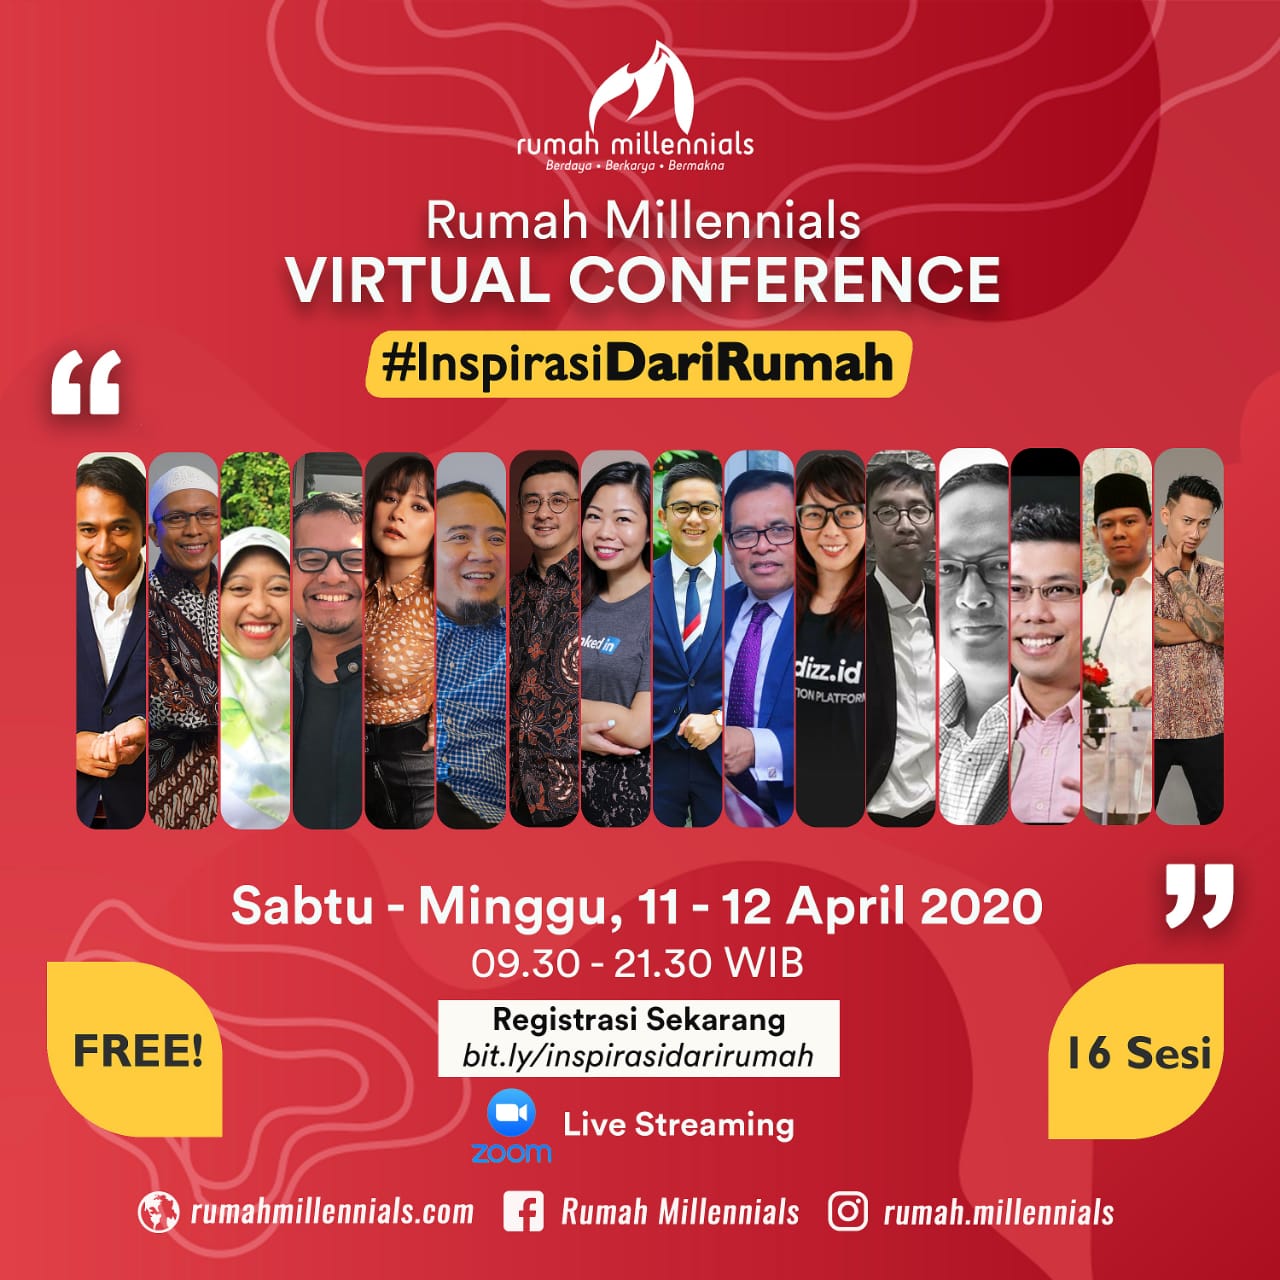 Biar Produktif, Yuk Ikutan Virtual Conference Rumah Millennials Ini!